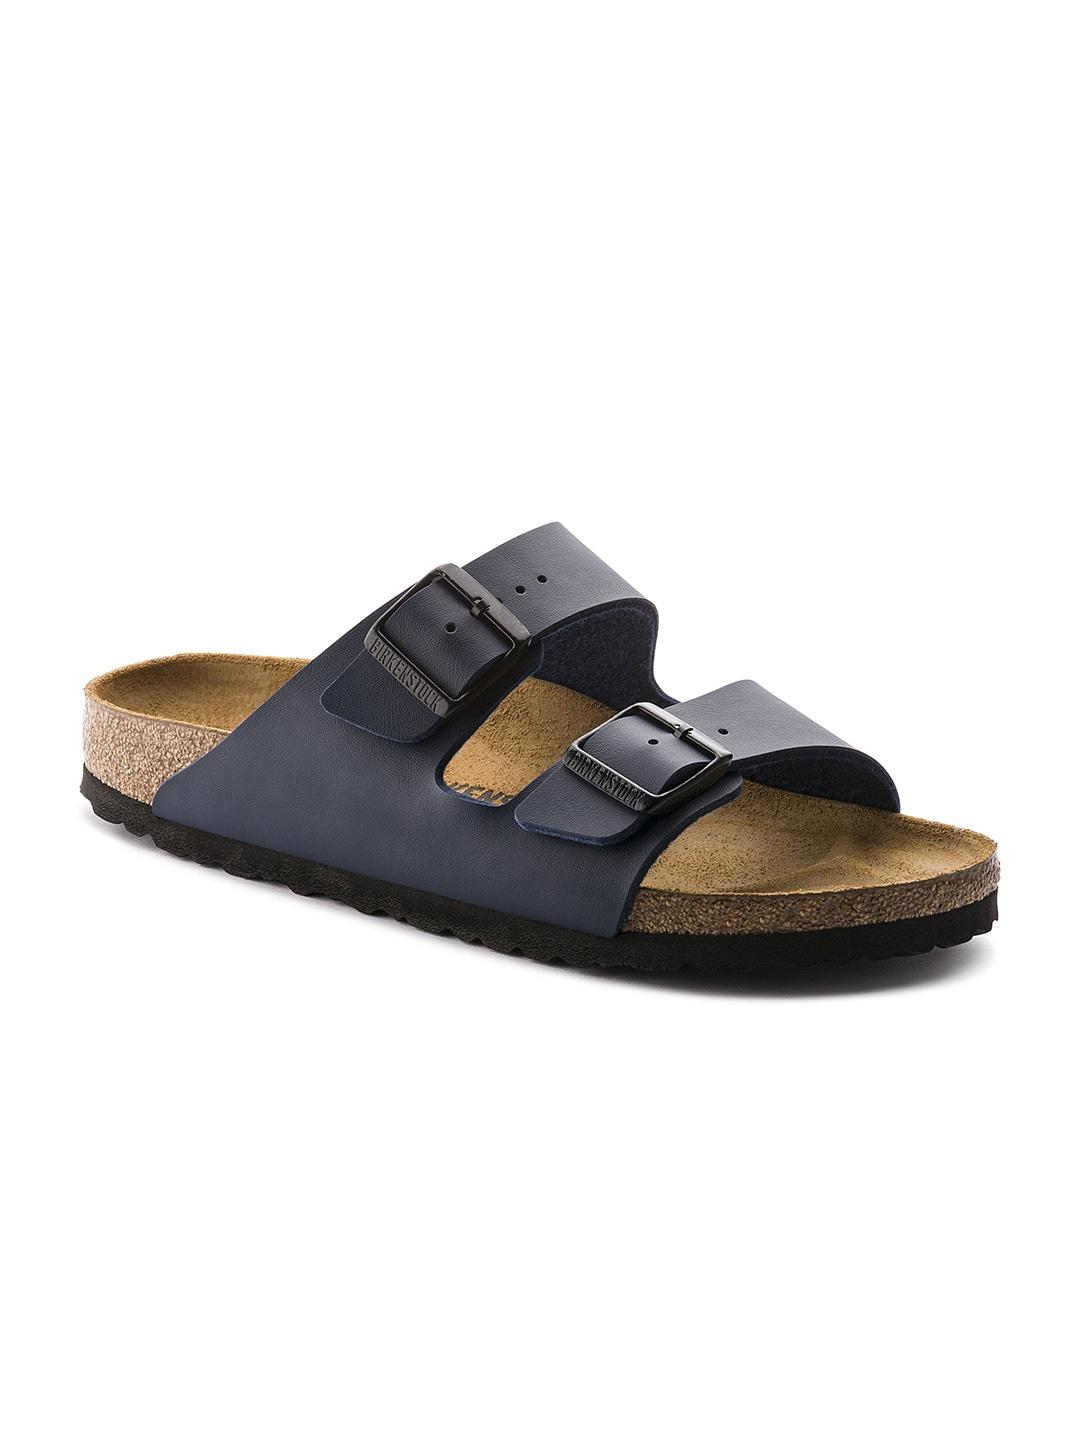 birkenstock-navy-blue-arizona-birko-flor-regular-width-comfort-sandals